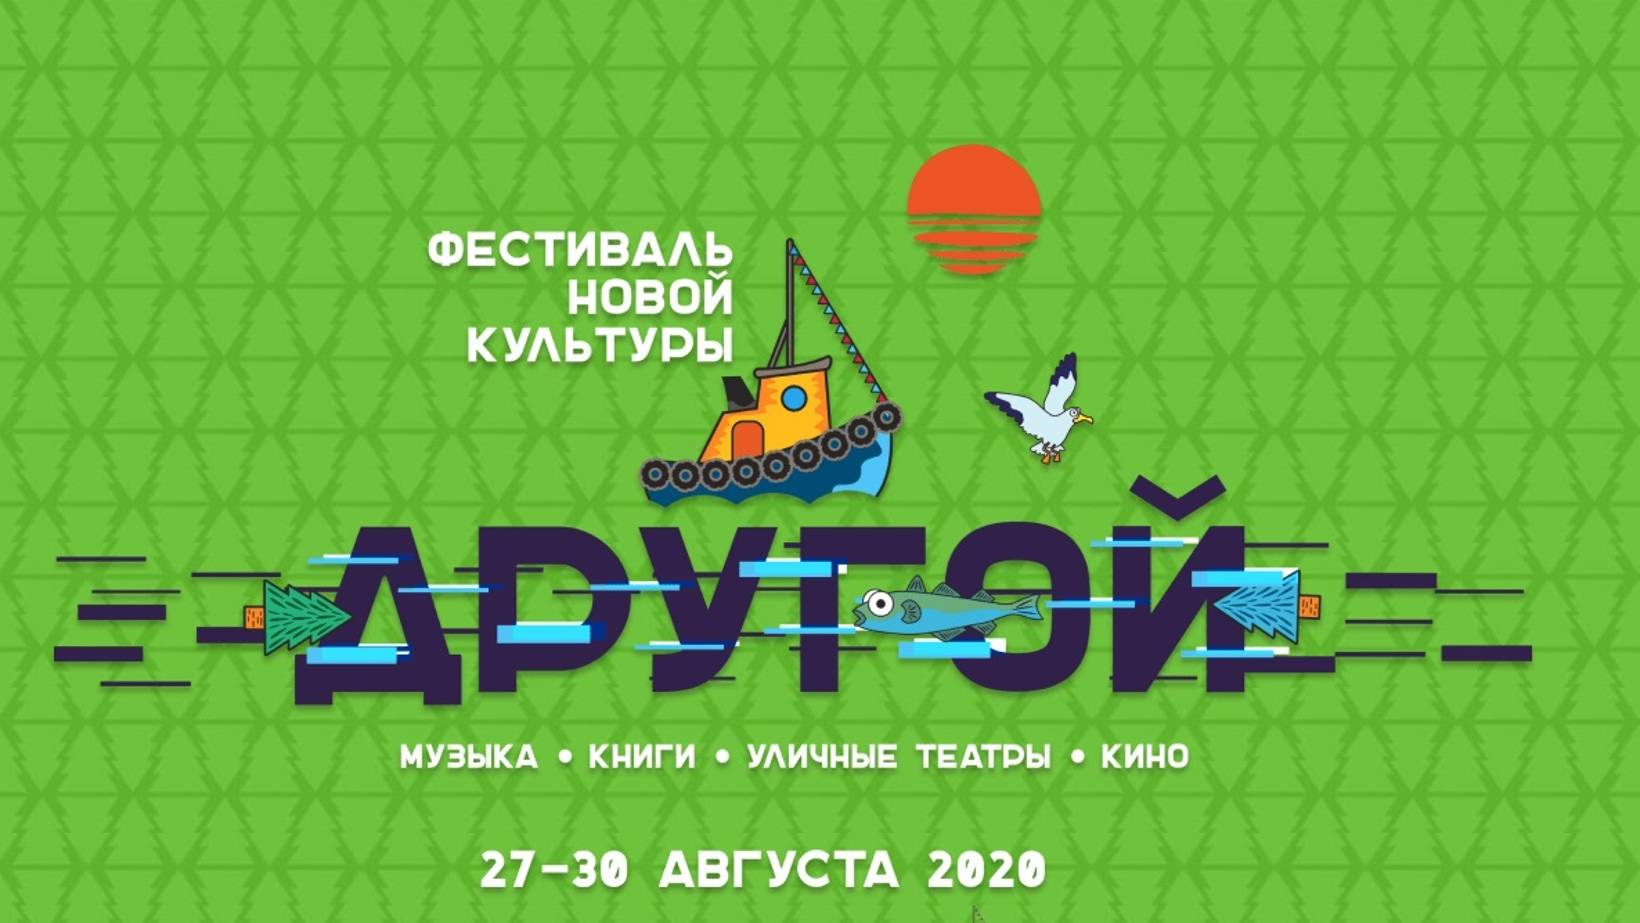 В Архангельске состоится фестиваль новой культуры